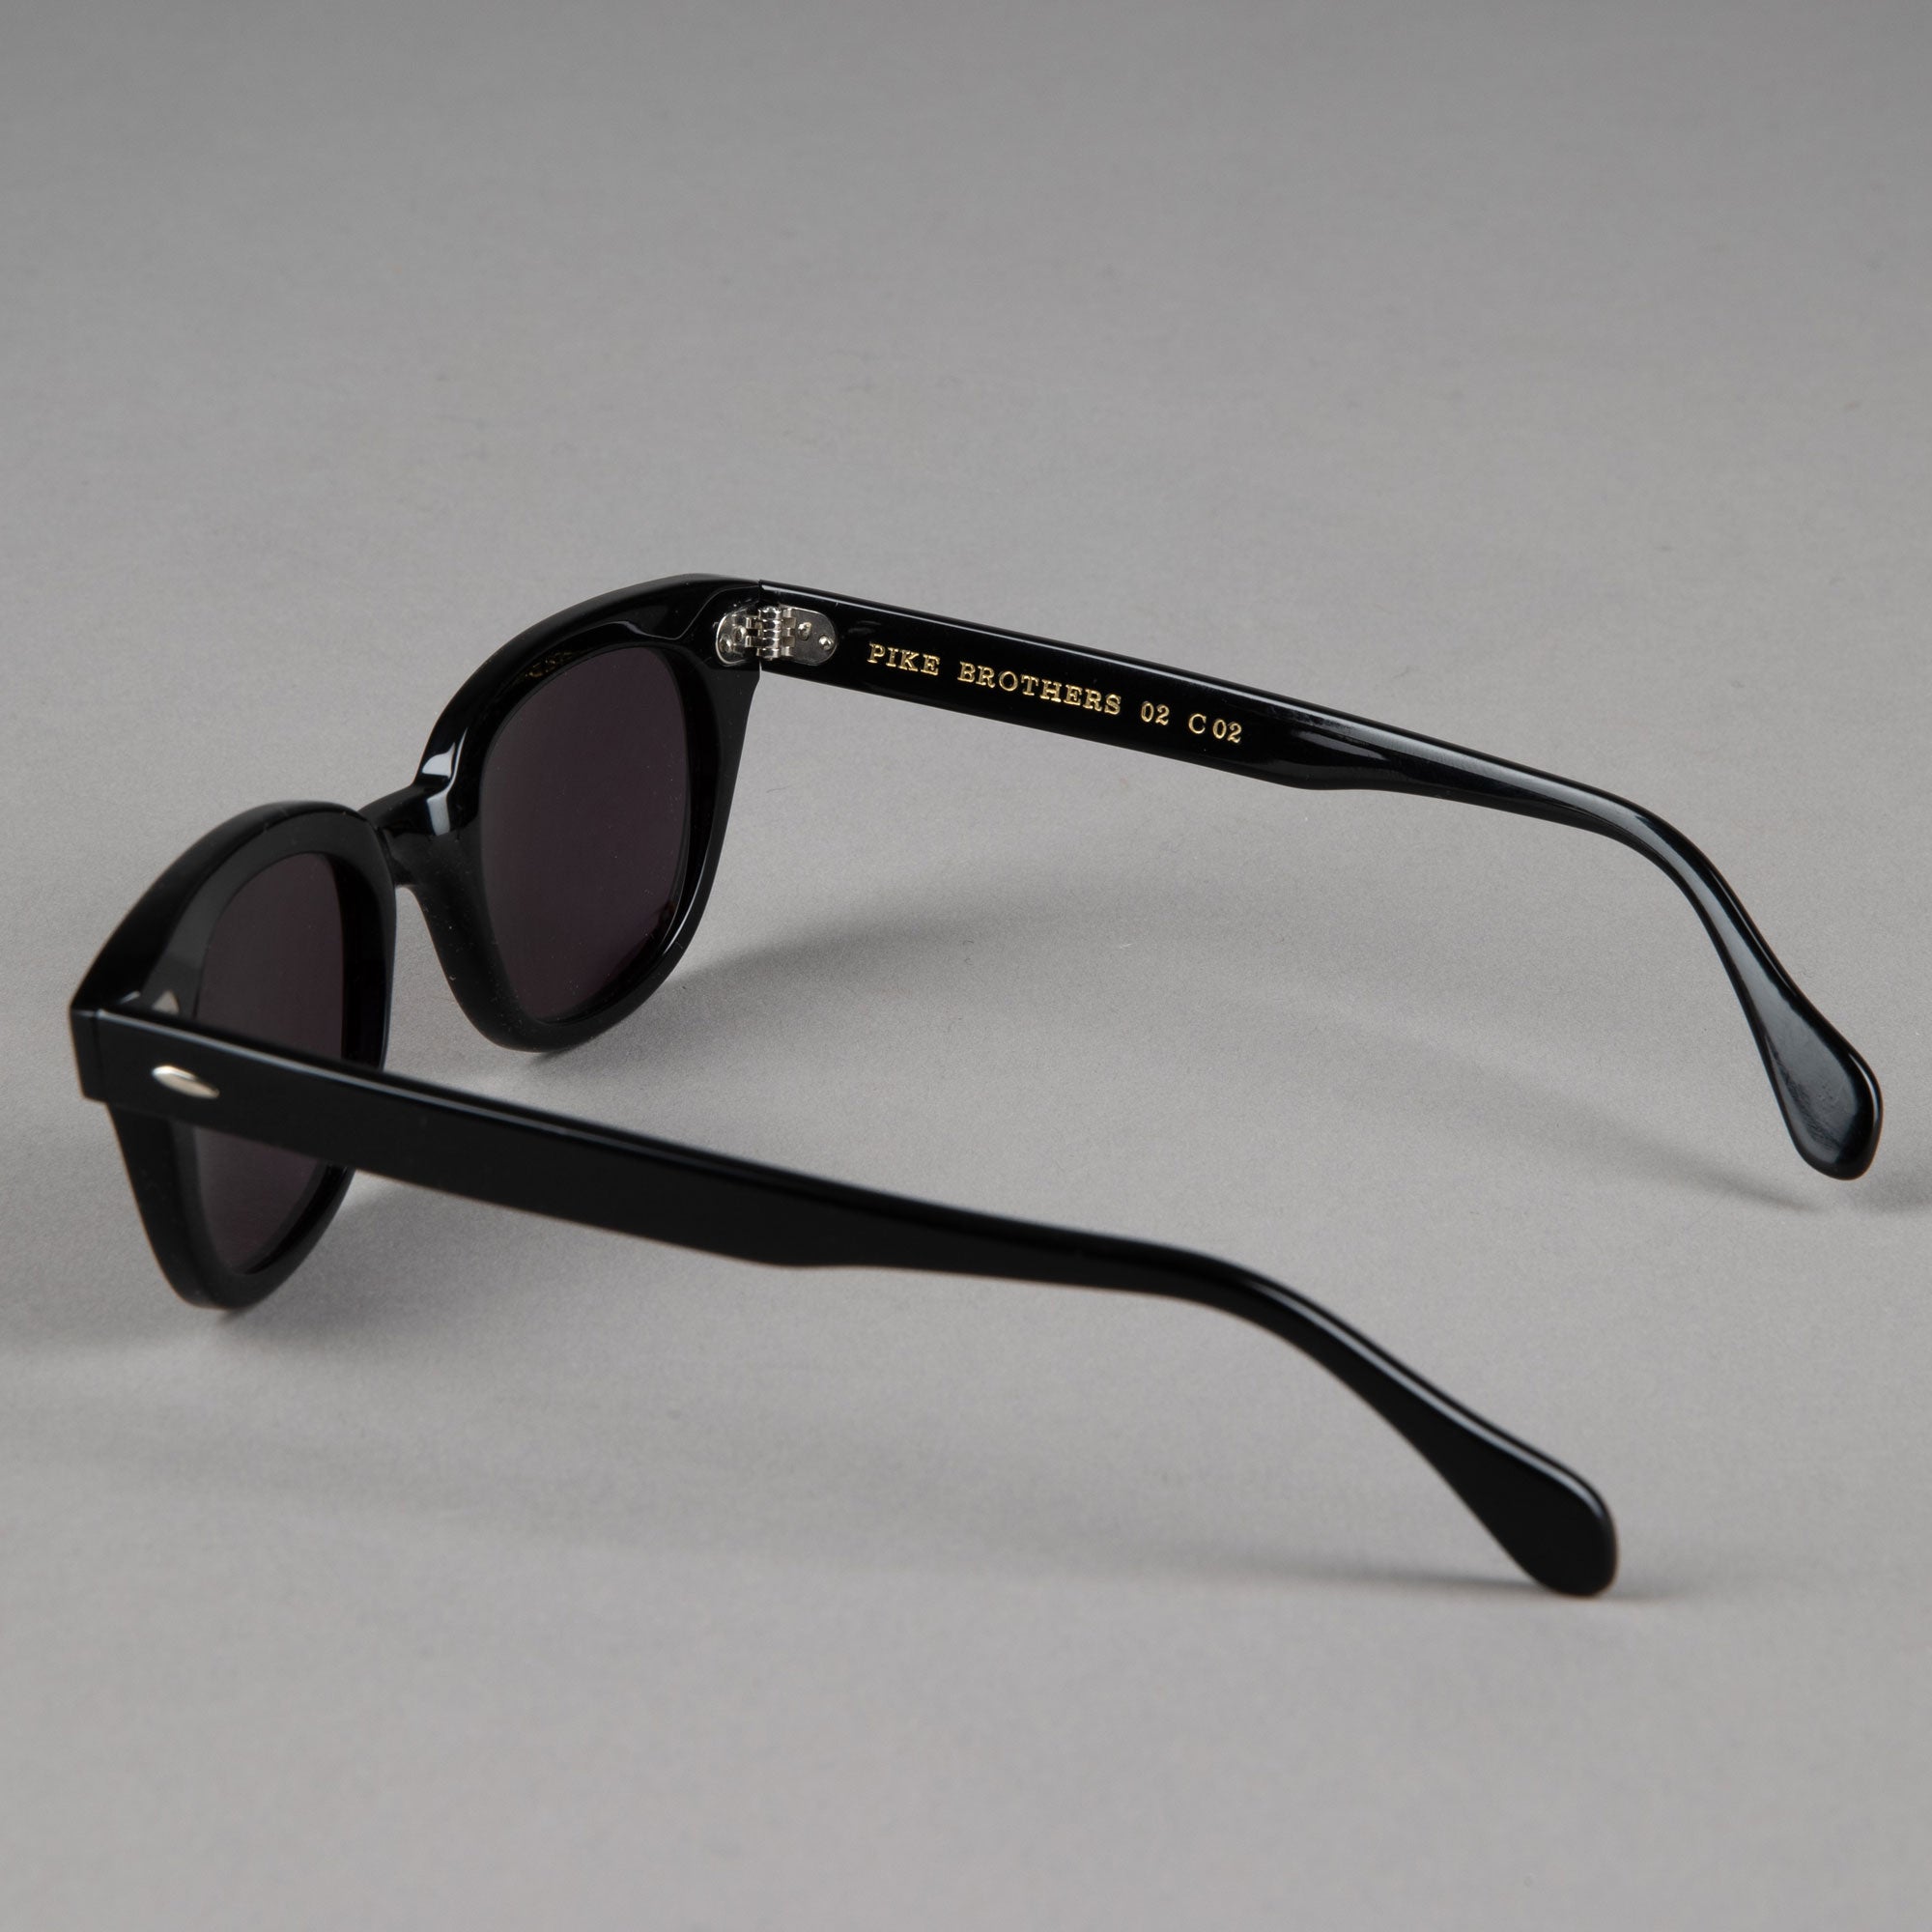 1963 Elwood Sonnenbrille - schwarz